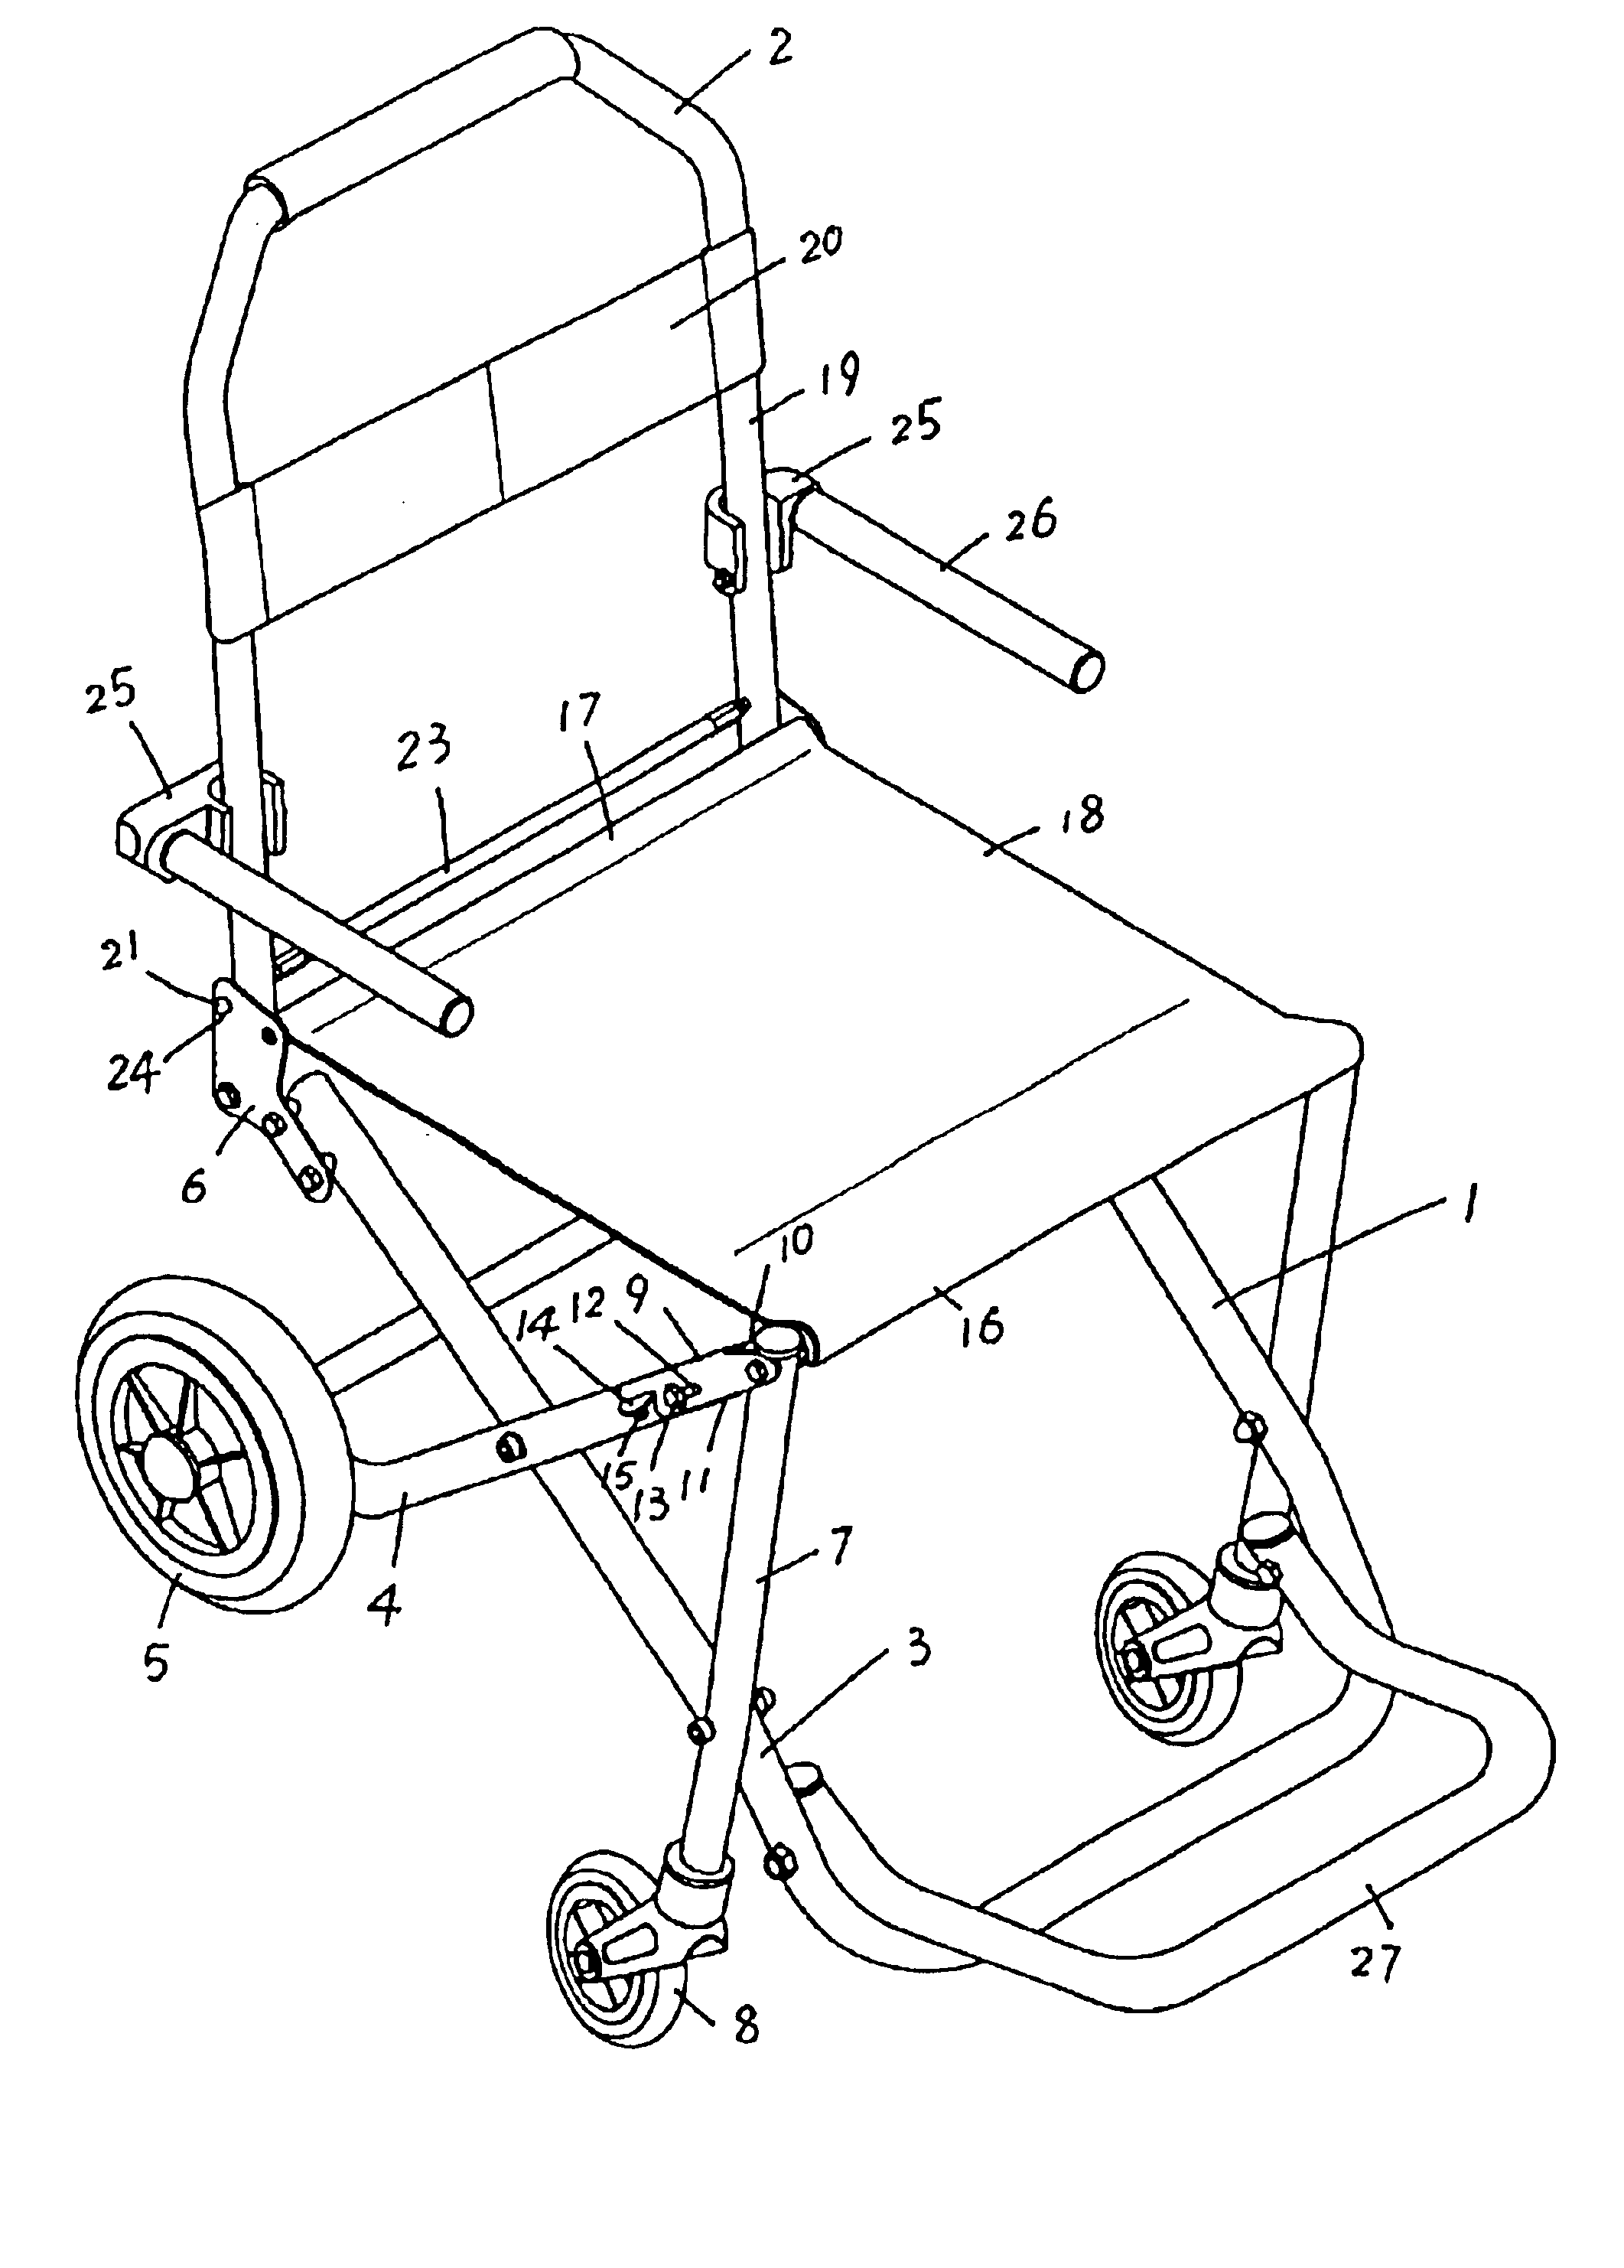 Portable folding wheelchair